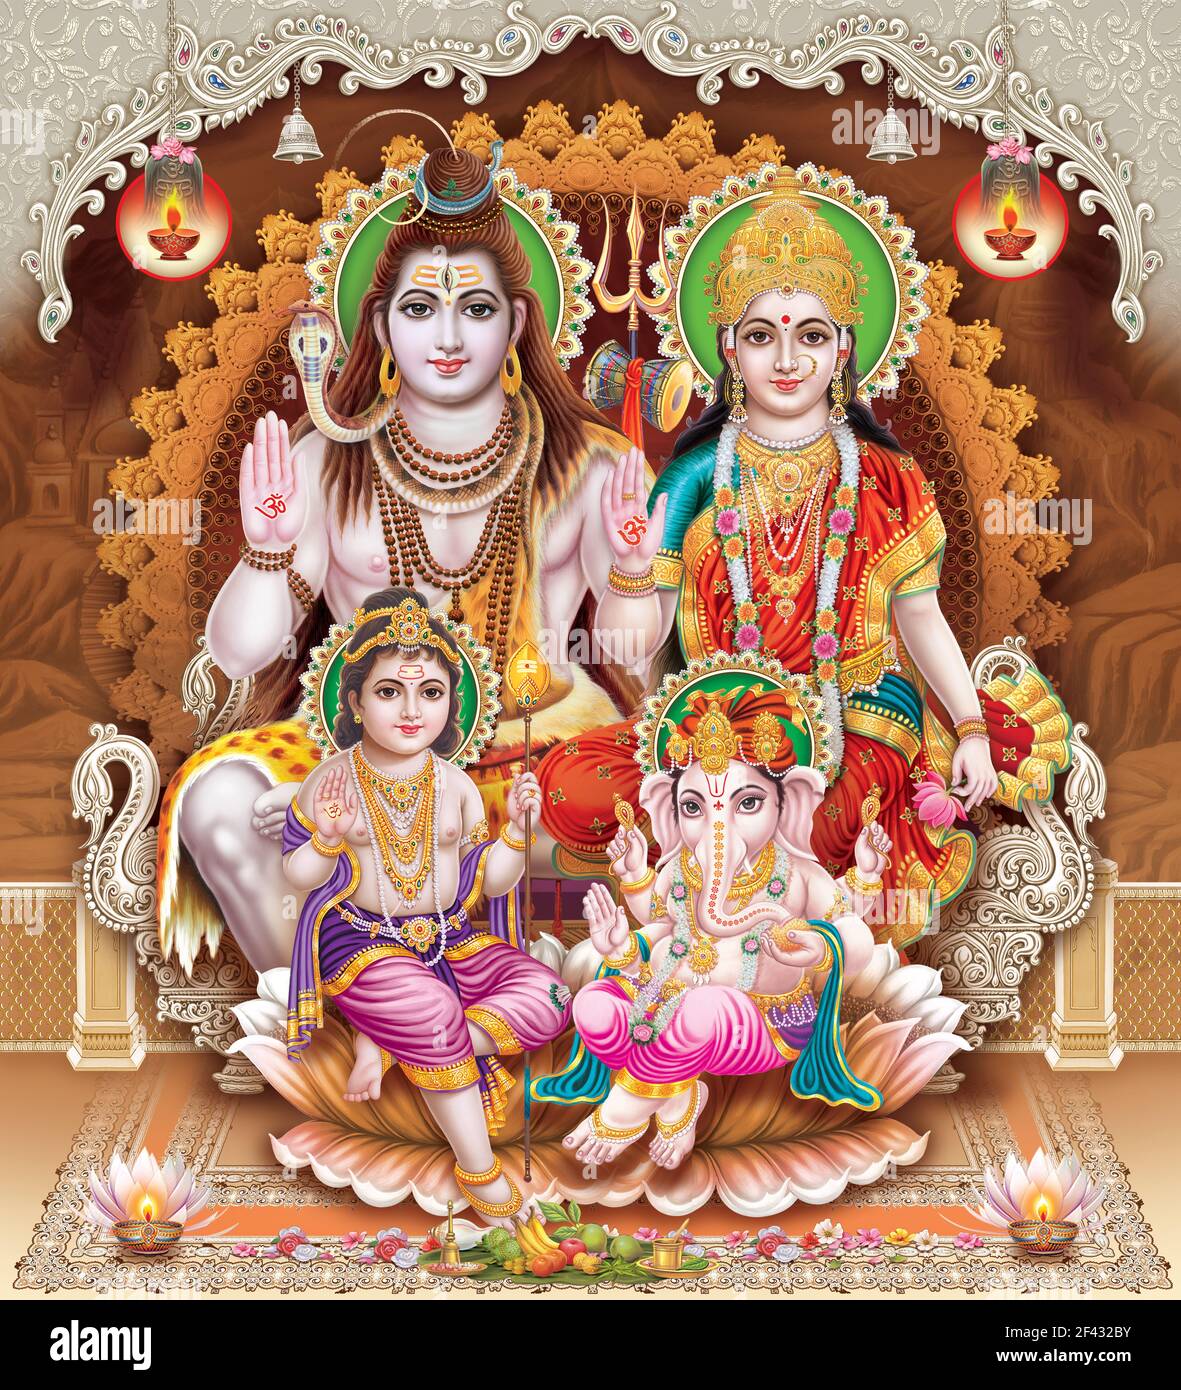 Sfoglia le immagini ad alta risoluzione di Shiva Parvati Kartik Ganesh Foto Stock